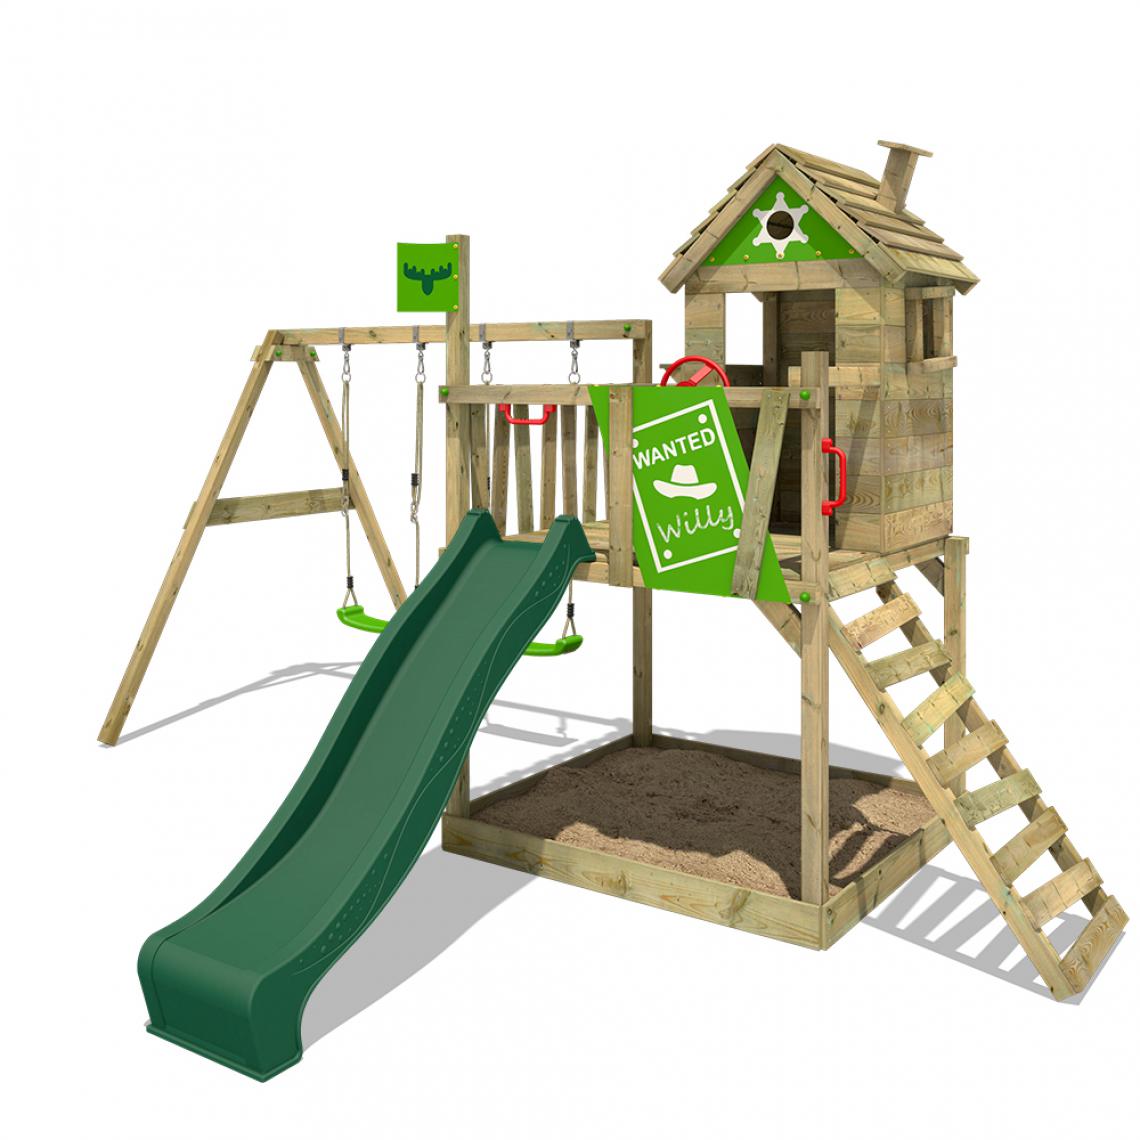 Fatmoose - Aire de jeux Portique bois RockyRanch avec balançoire et toboggan vert Cabane enfant extérieure avec bac à sable, échelle d'escalade & accessoires de jeux - Aire de jeux